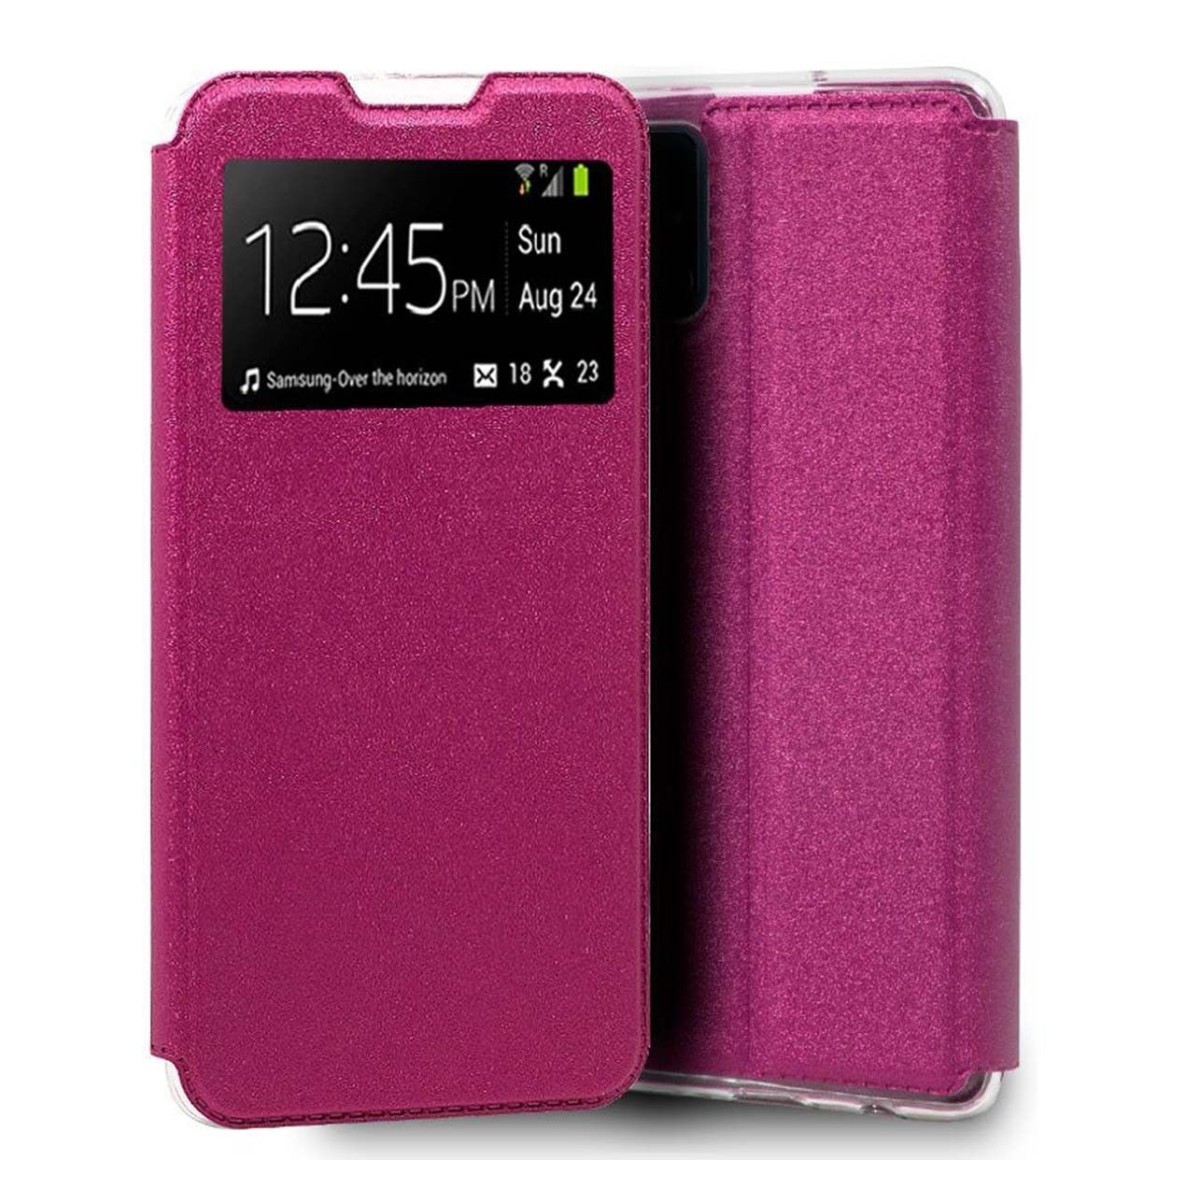 Funda Libro Soporte con Ventana para Xiaomi Mi 10T / Mi 10T Pro color Rosa